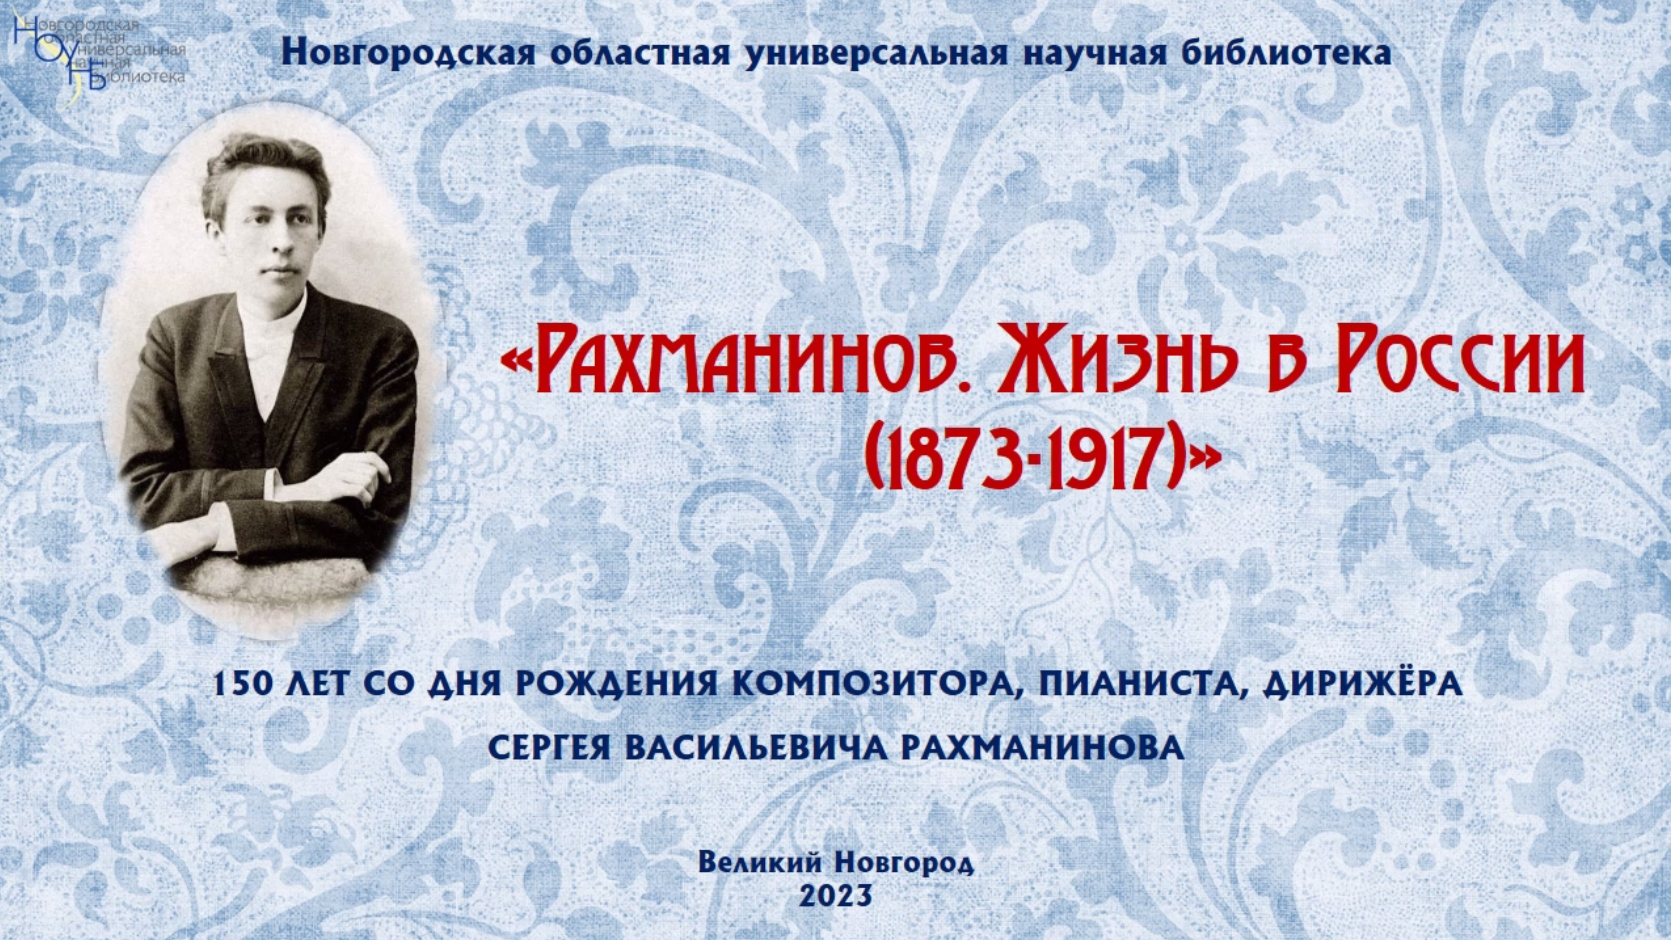 Виртуальная выставка «Рахманинов. Жизнь в России (1873-1917)»